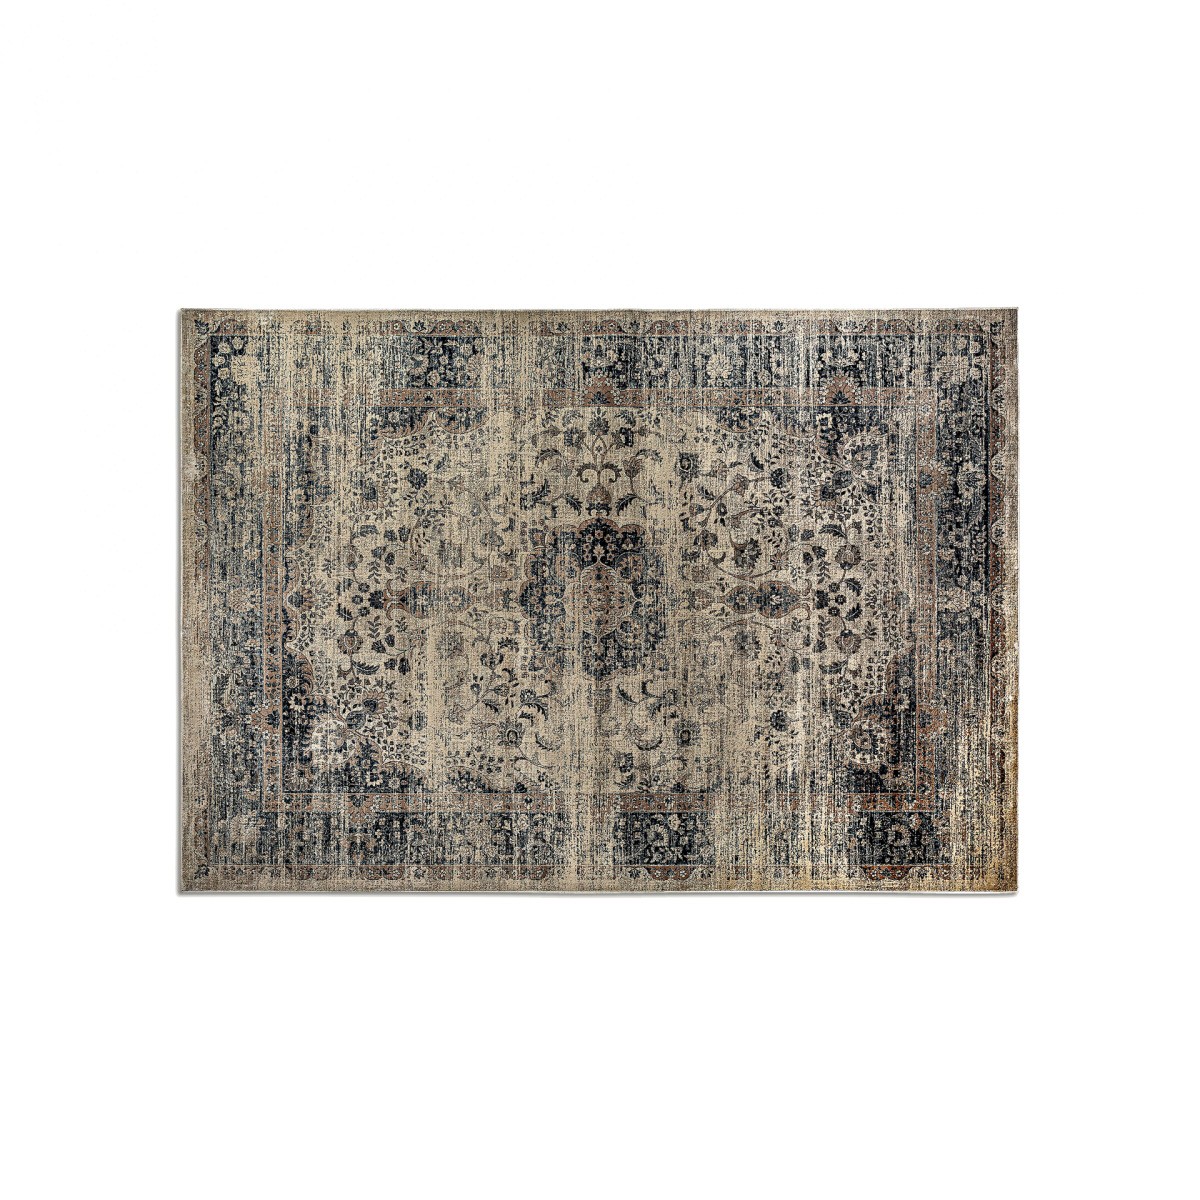 Estila Orientálny obdĺžnikový koberec Samira z viskózy v odtieňoch hnedej s ornamentálnym zdobením 240x340cm